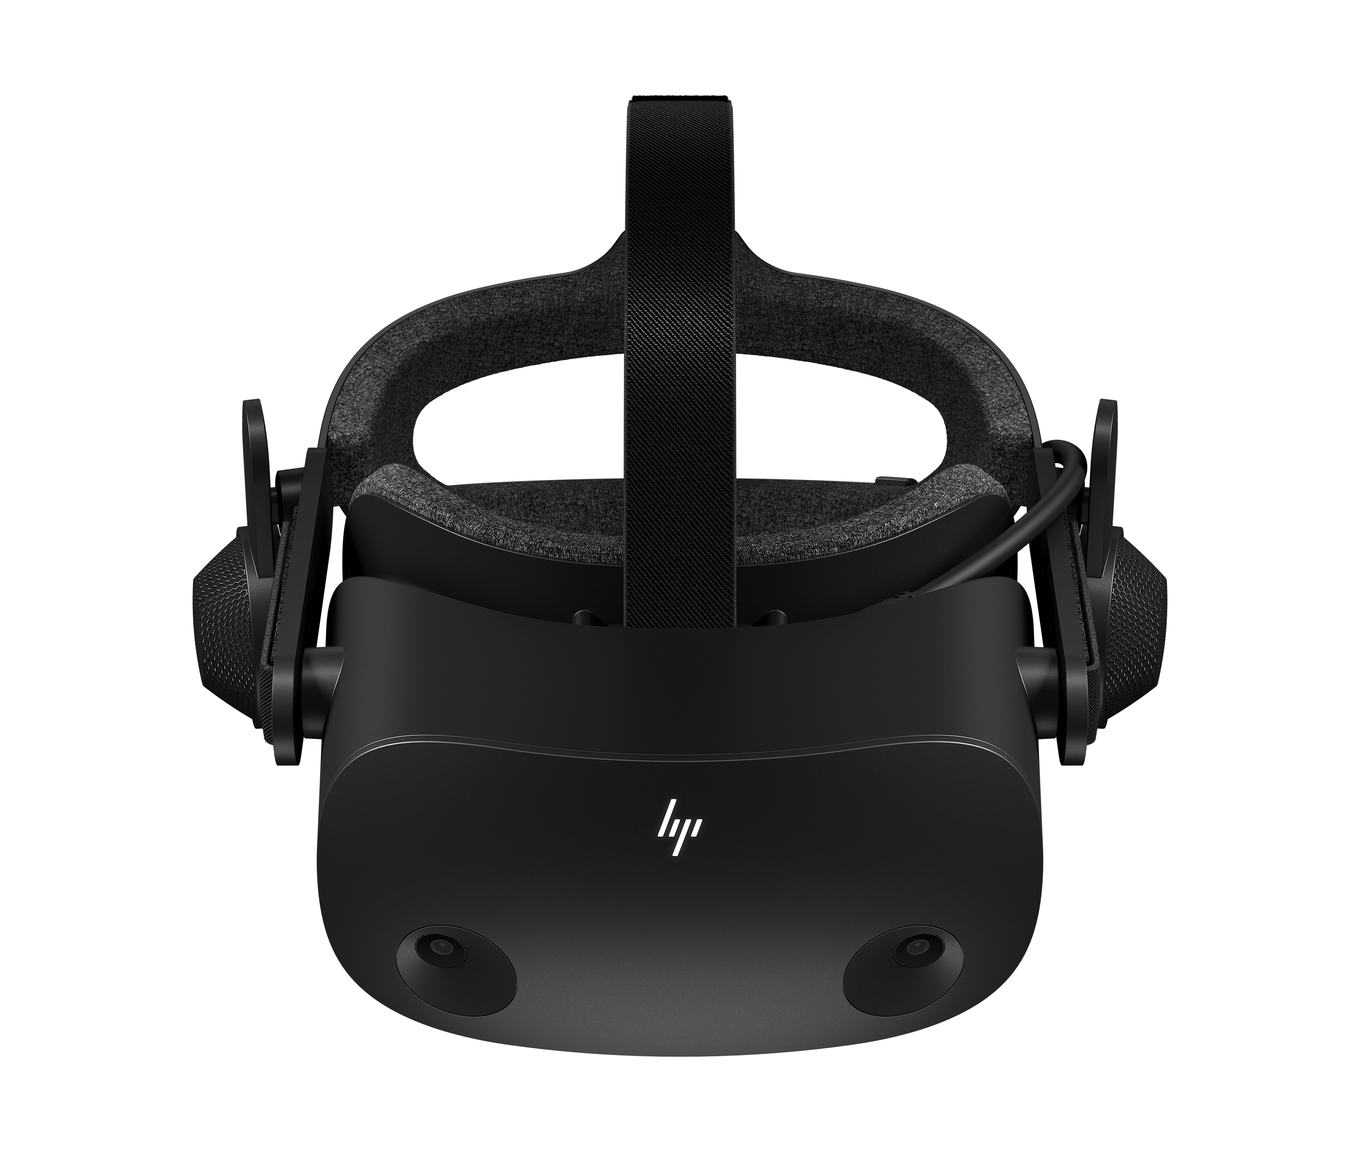 HP Reverb VR Headset - Pro Edition - короткий но максимально информативный обзор Для большего удобства добавлены характеристики отзывы и видео